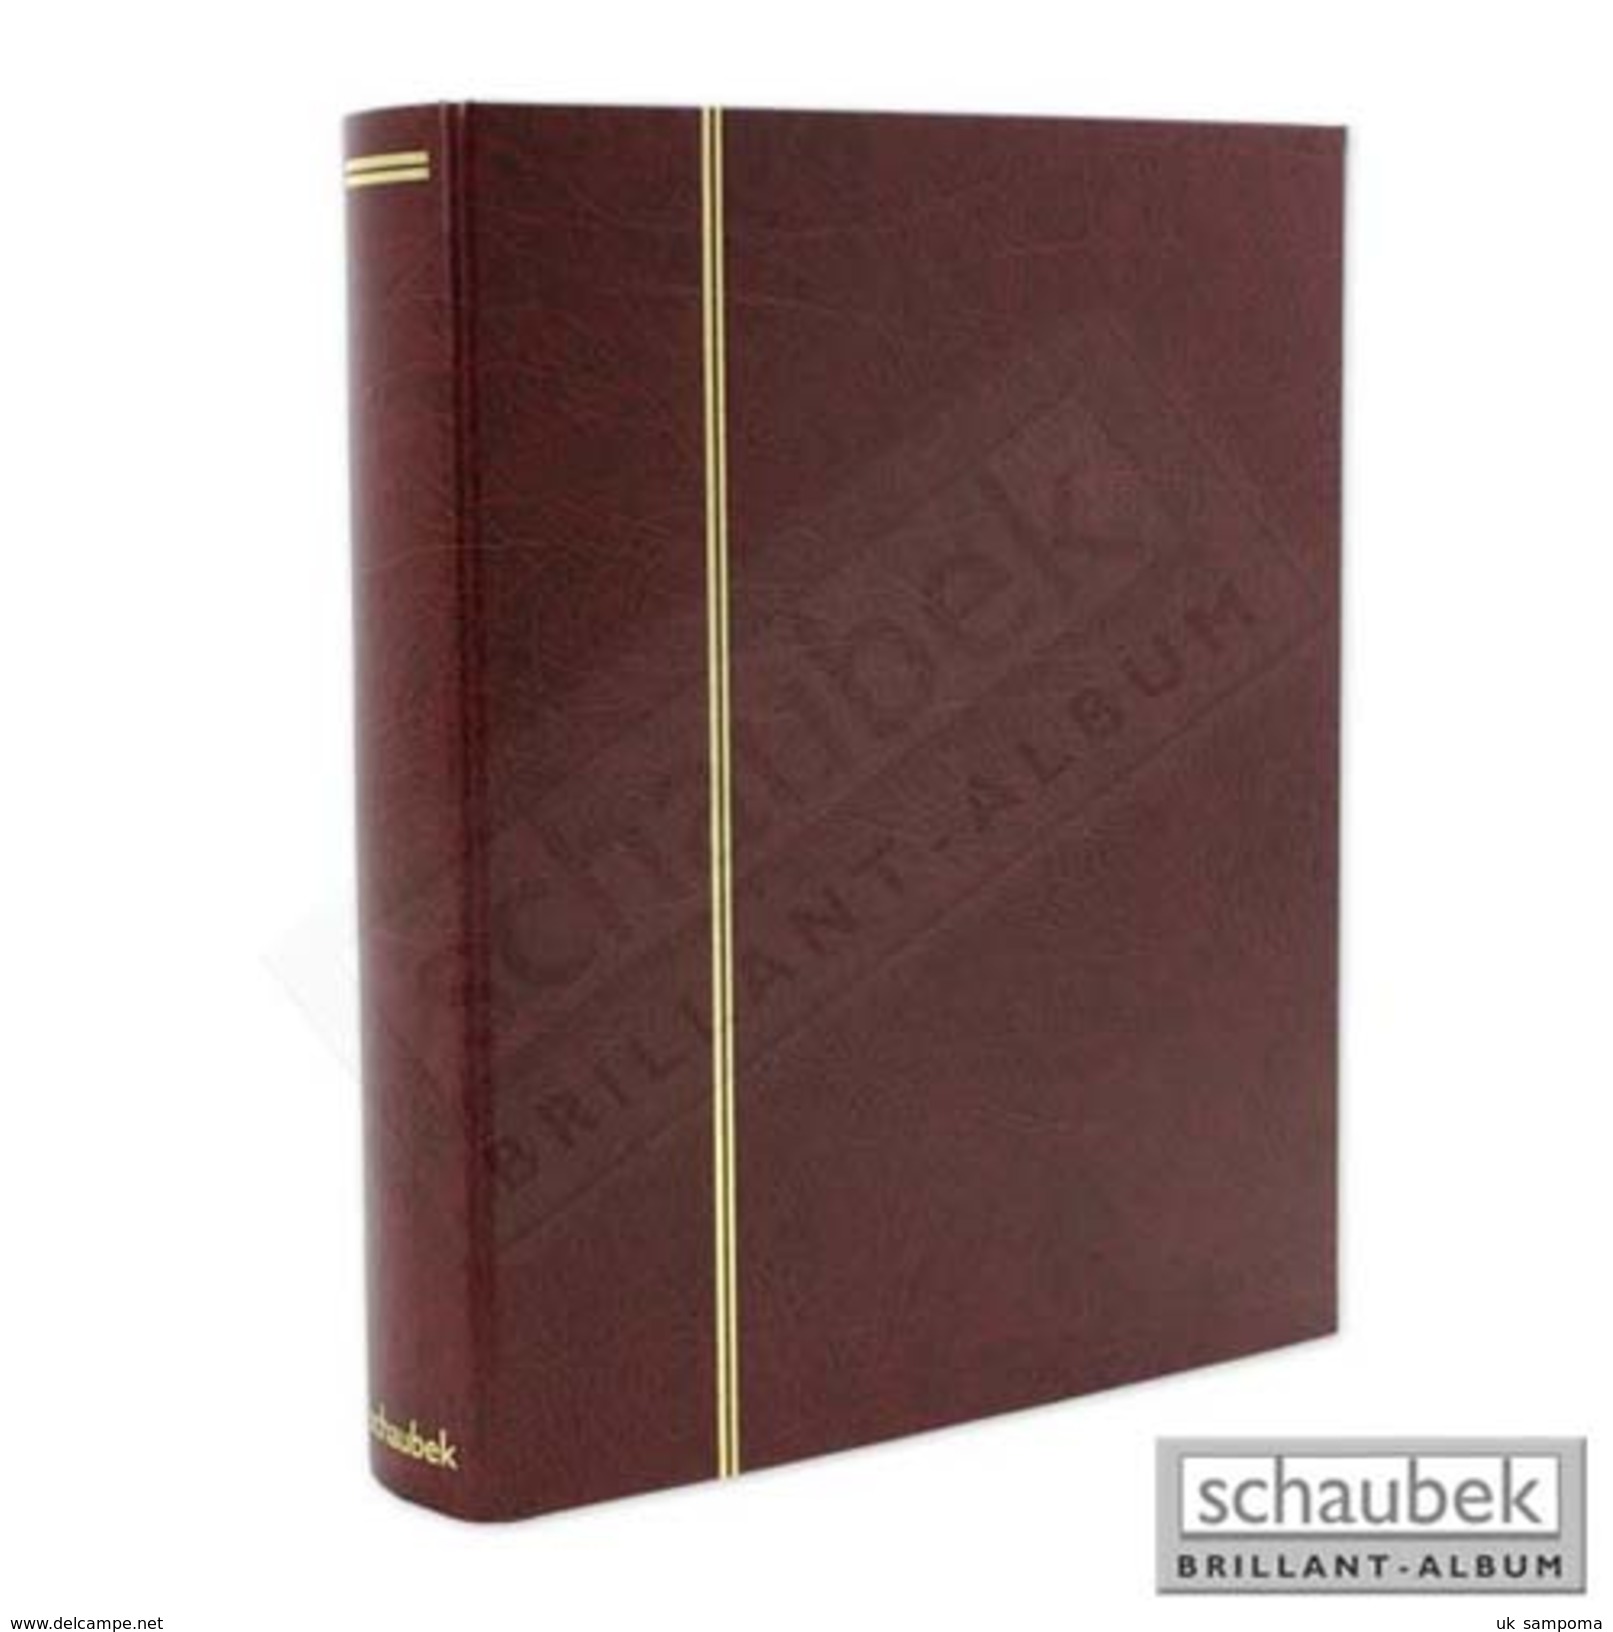 Schaubek Rb-1111 Universal Foil Sheet Album, E.g. For ETB Incl. 20 Sheets Fo-111 Red - Large Format, Black Pages